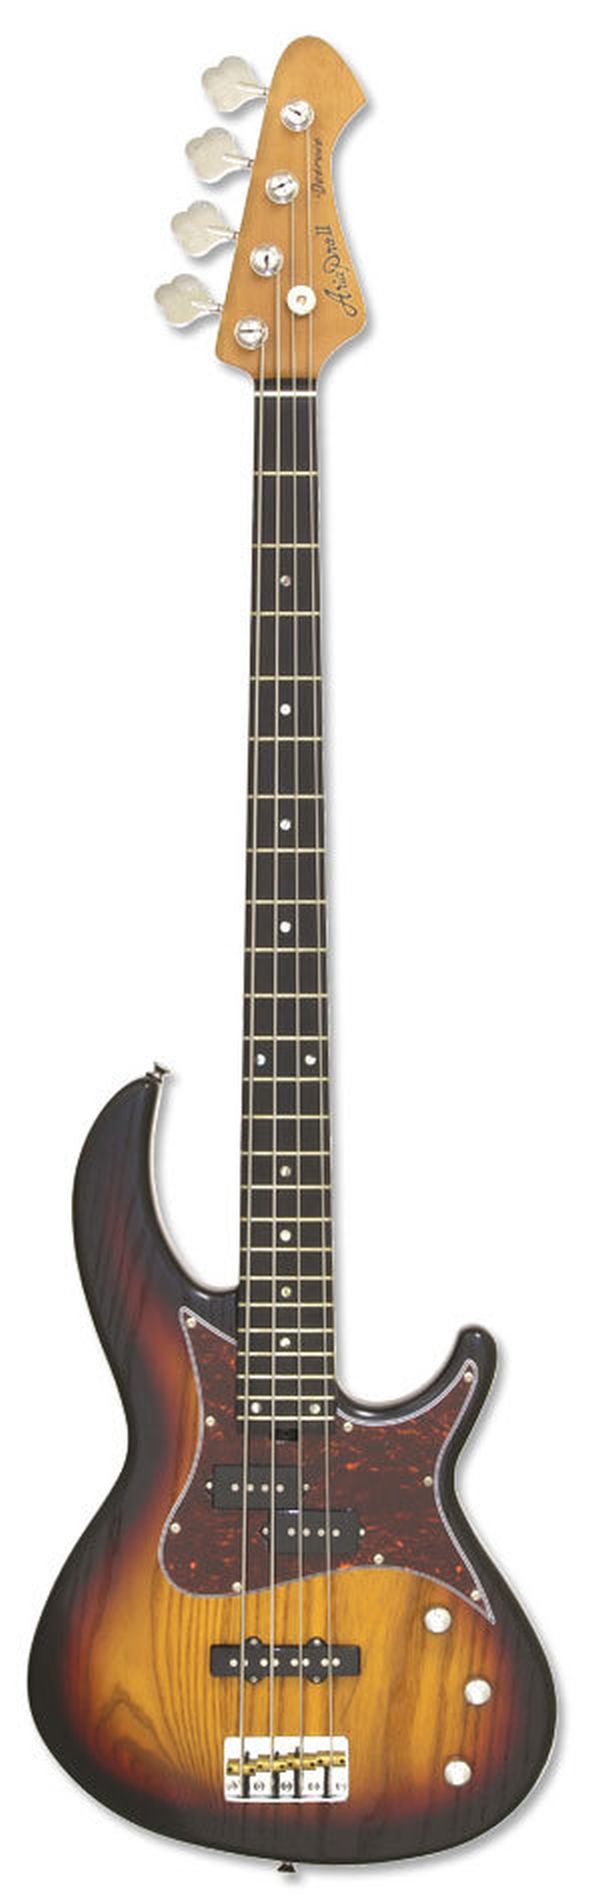 Бас-гитара Aria Pro II 313-MK2 OPSB, 4 струны, 24 лада, корпус Ясень, гриф Клен